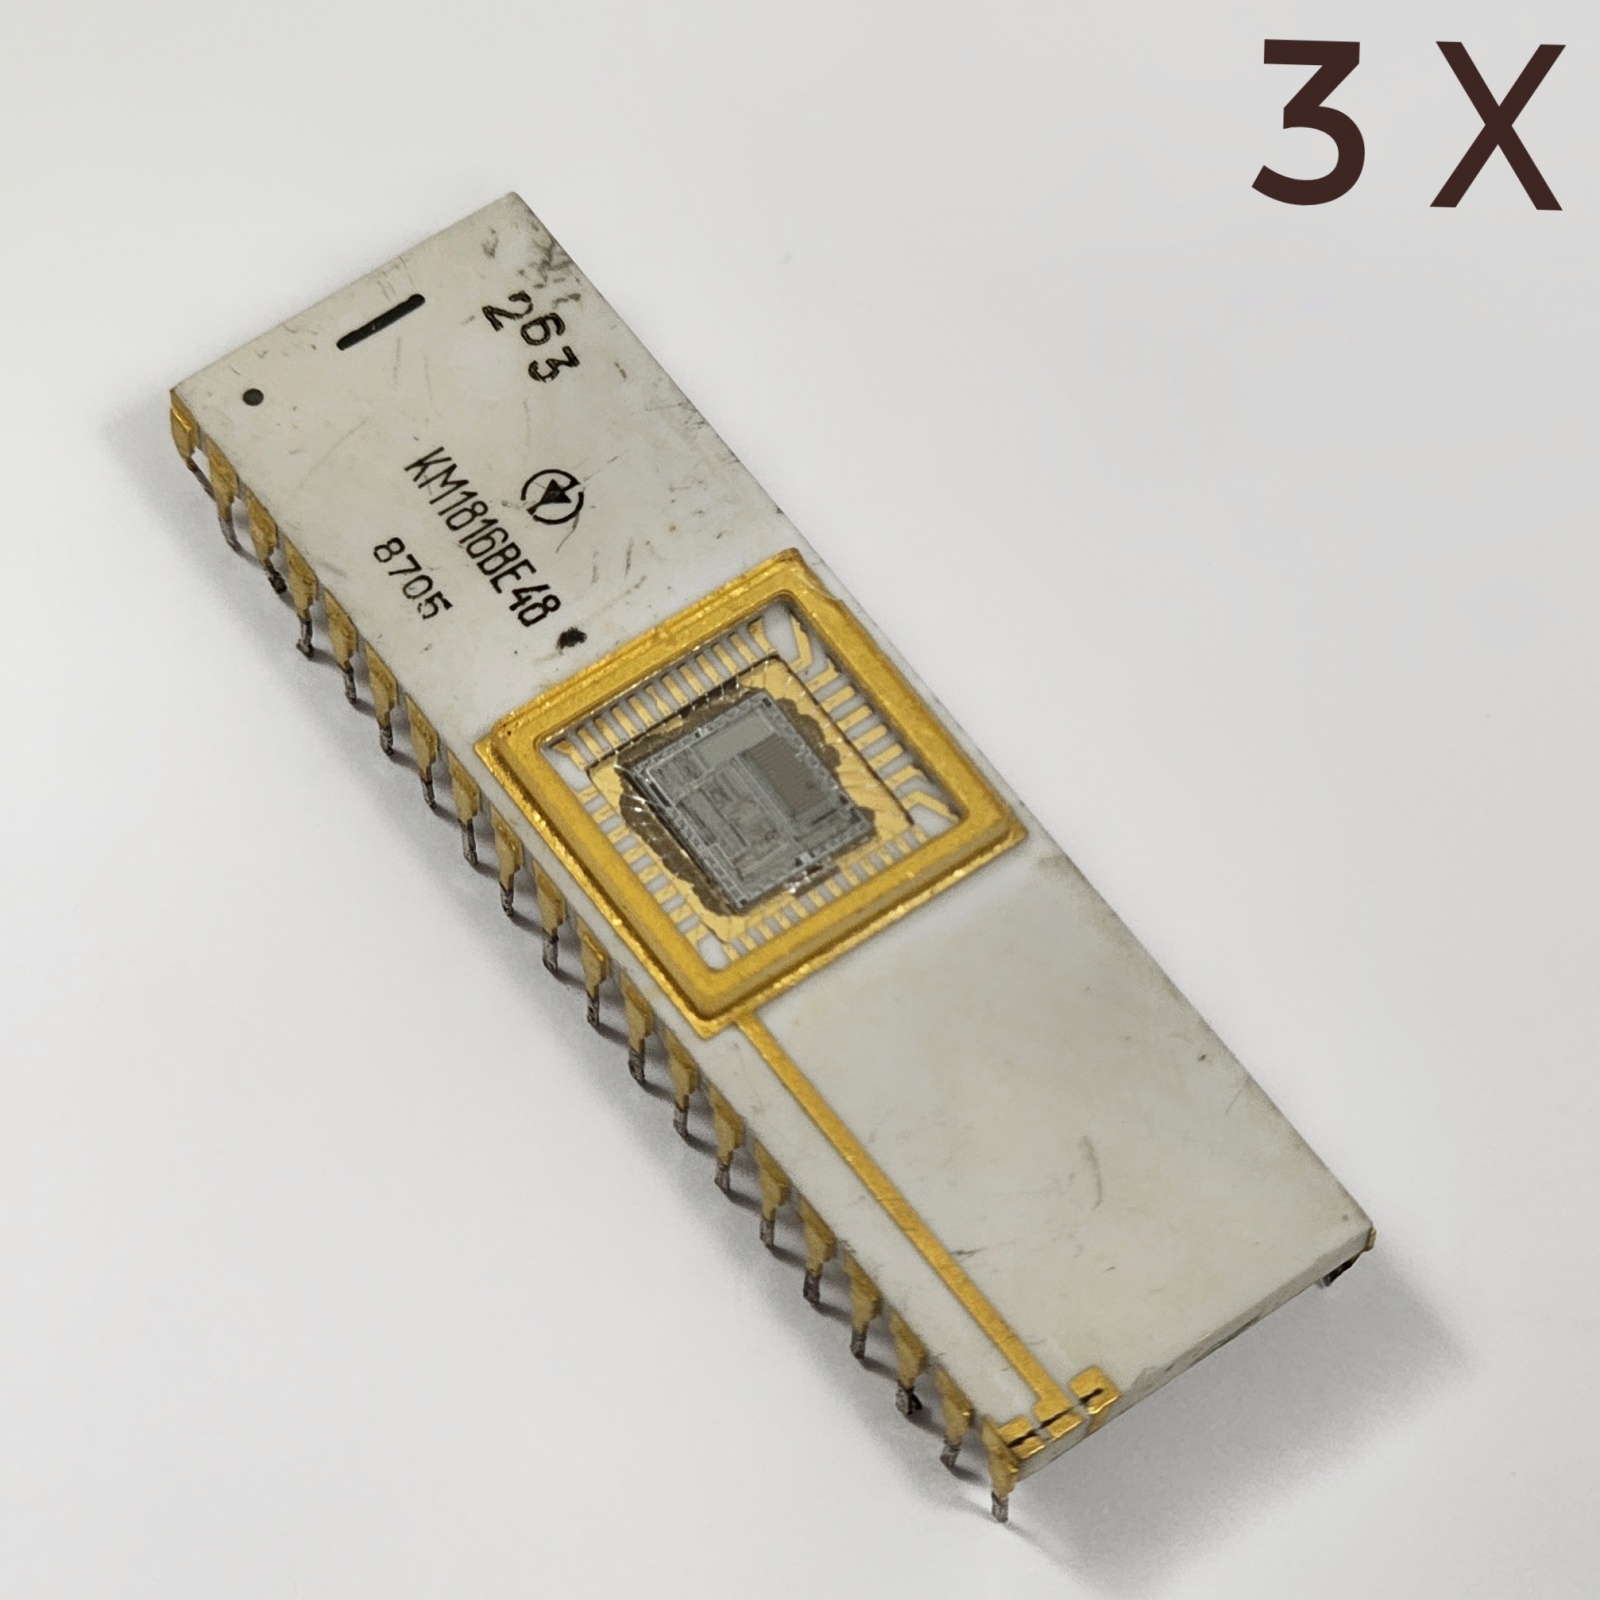 Карманный макромир: любительский комплект для макросъёмки на телефон - 33